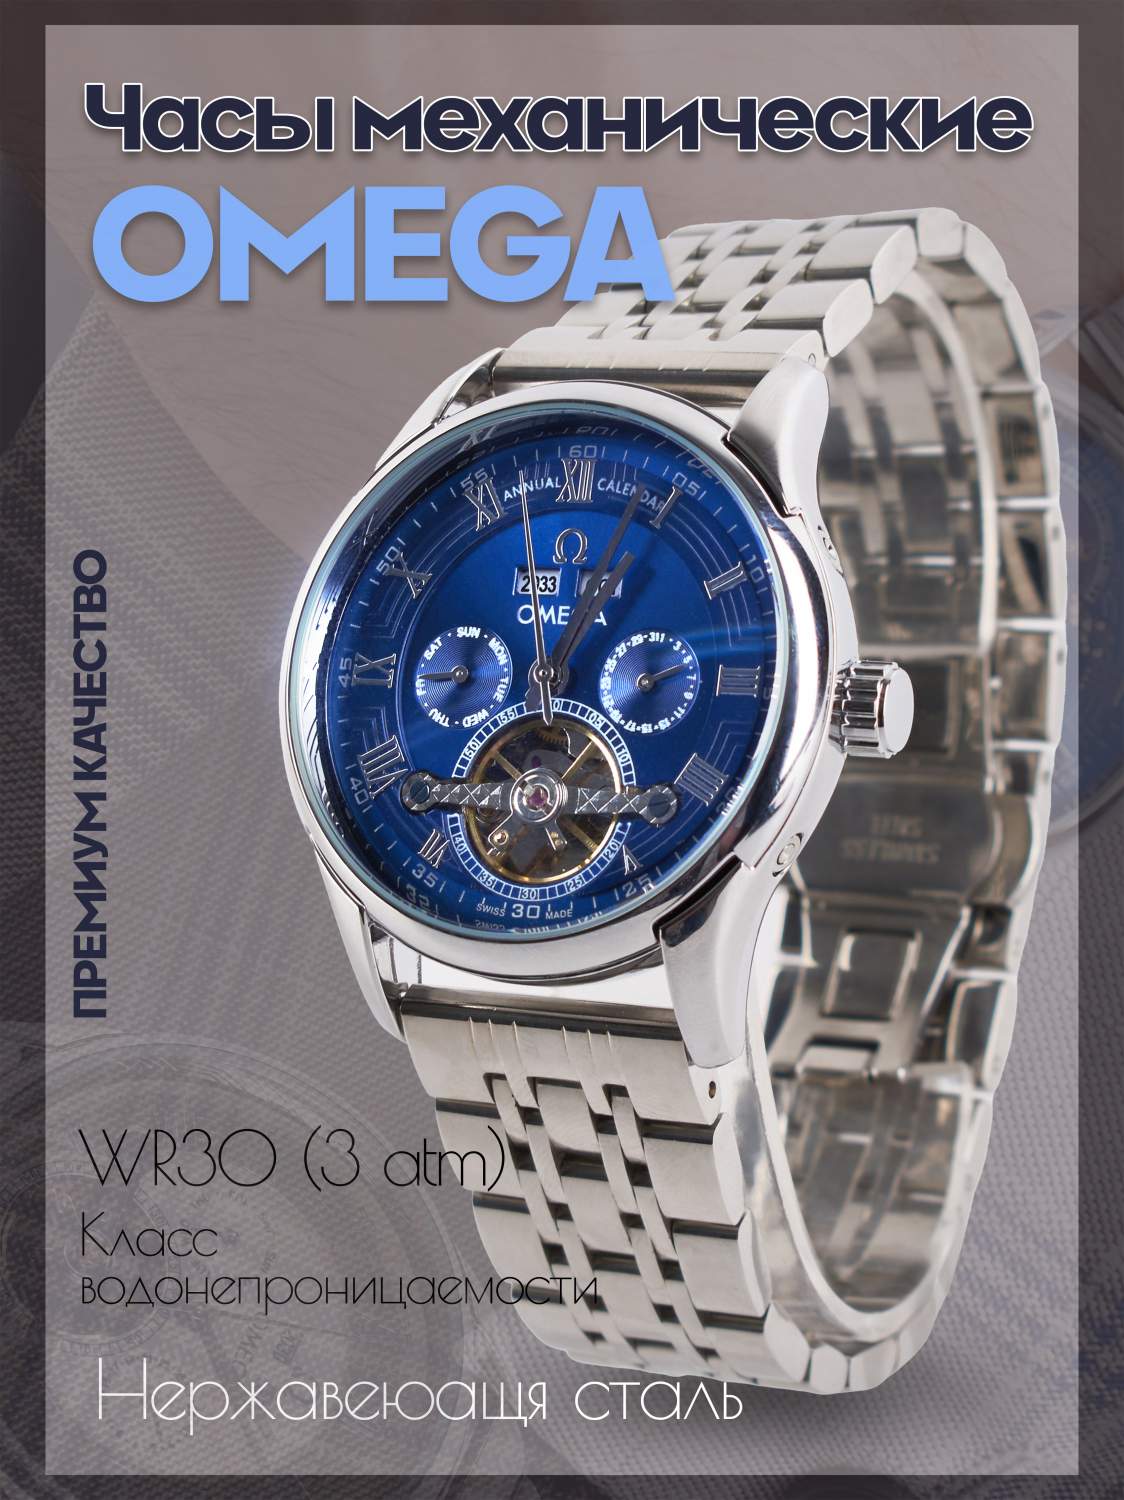 Часы мужские наручные Omega - купить часы мужские наручные Омега, цены в Москве на Мегамаркет